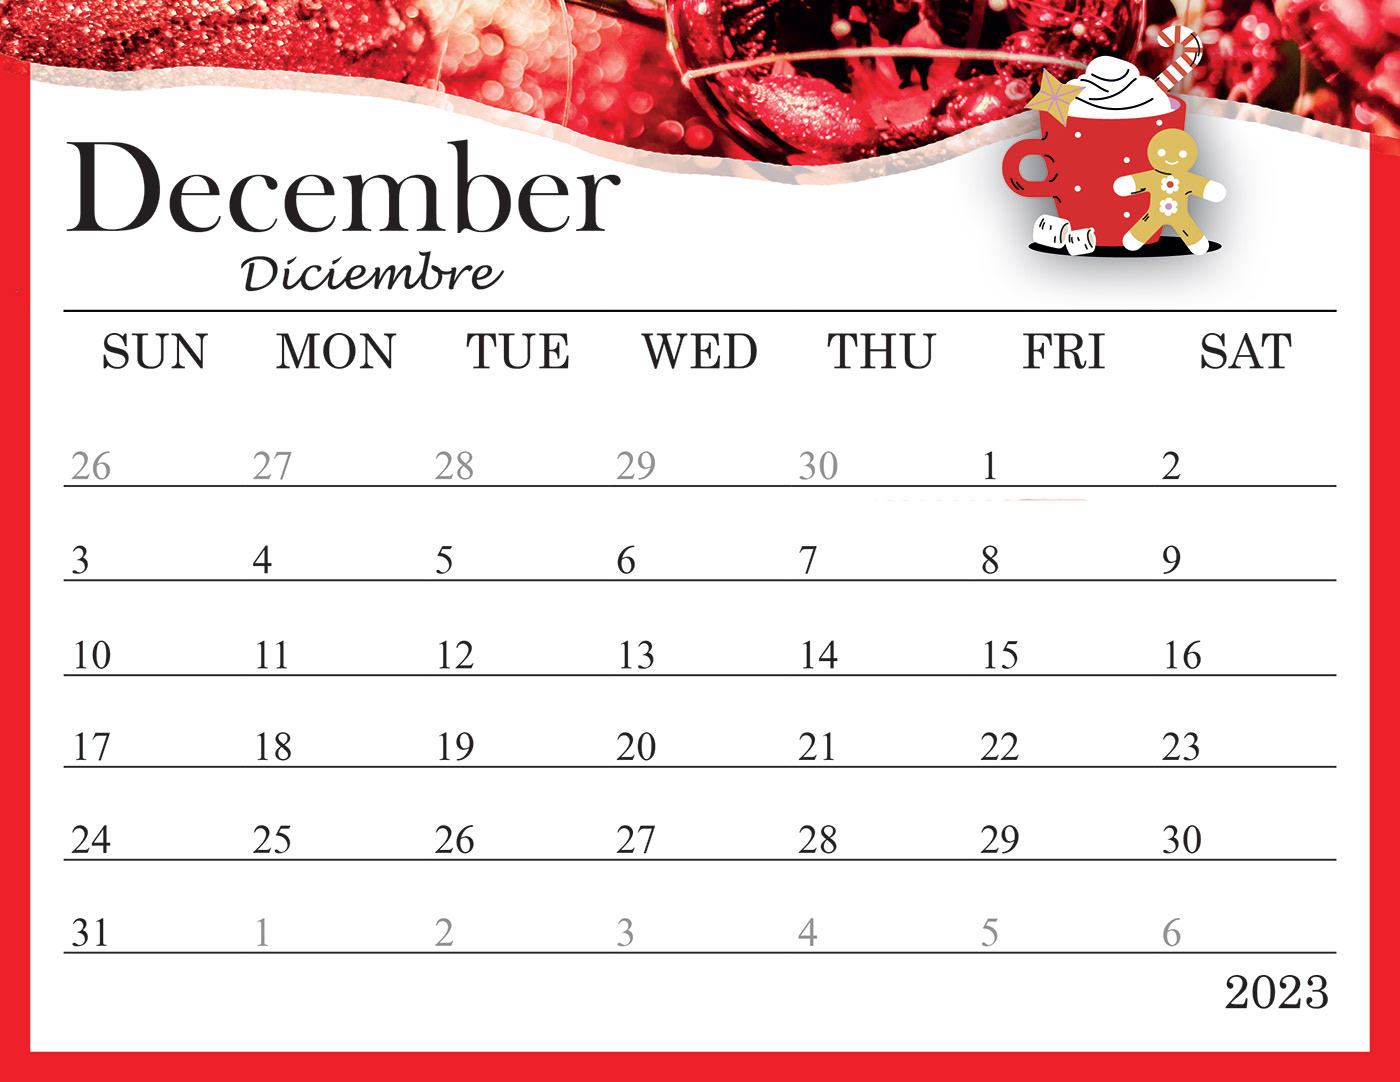 time timetable design calendar red 2023 design 2023 calendar calendario